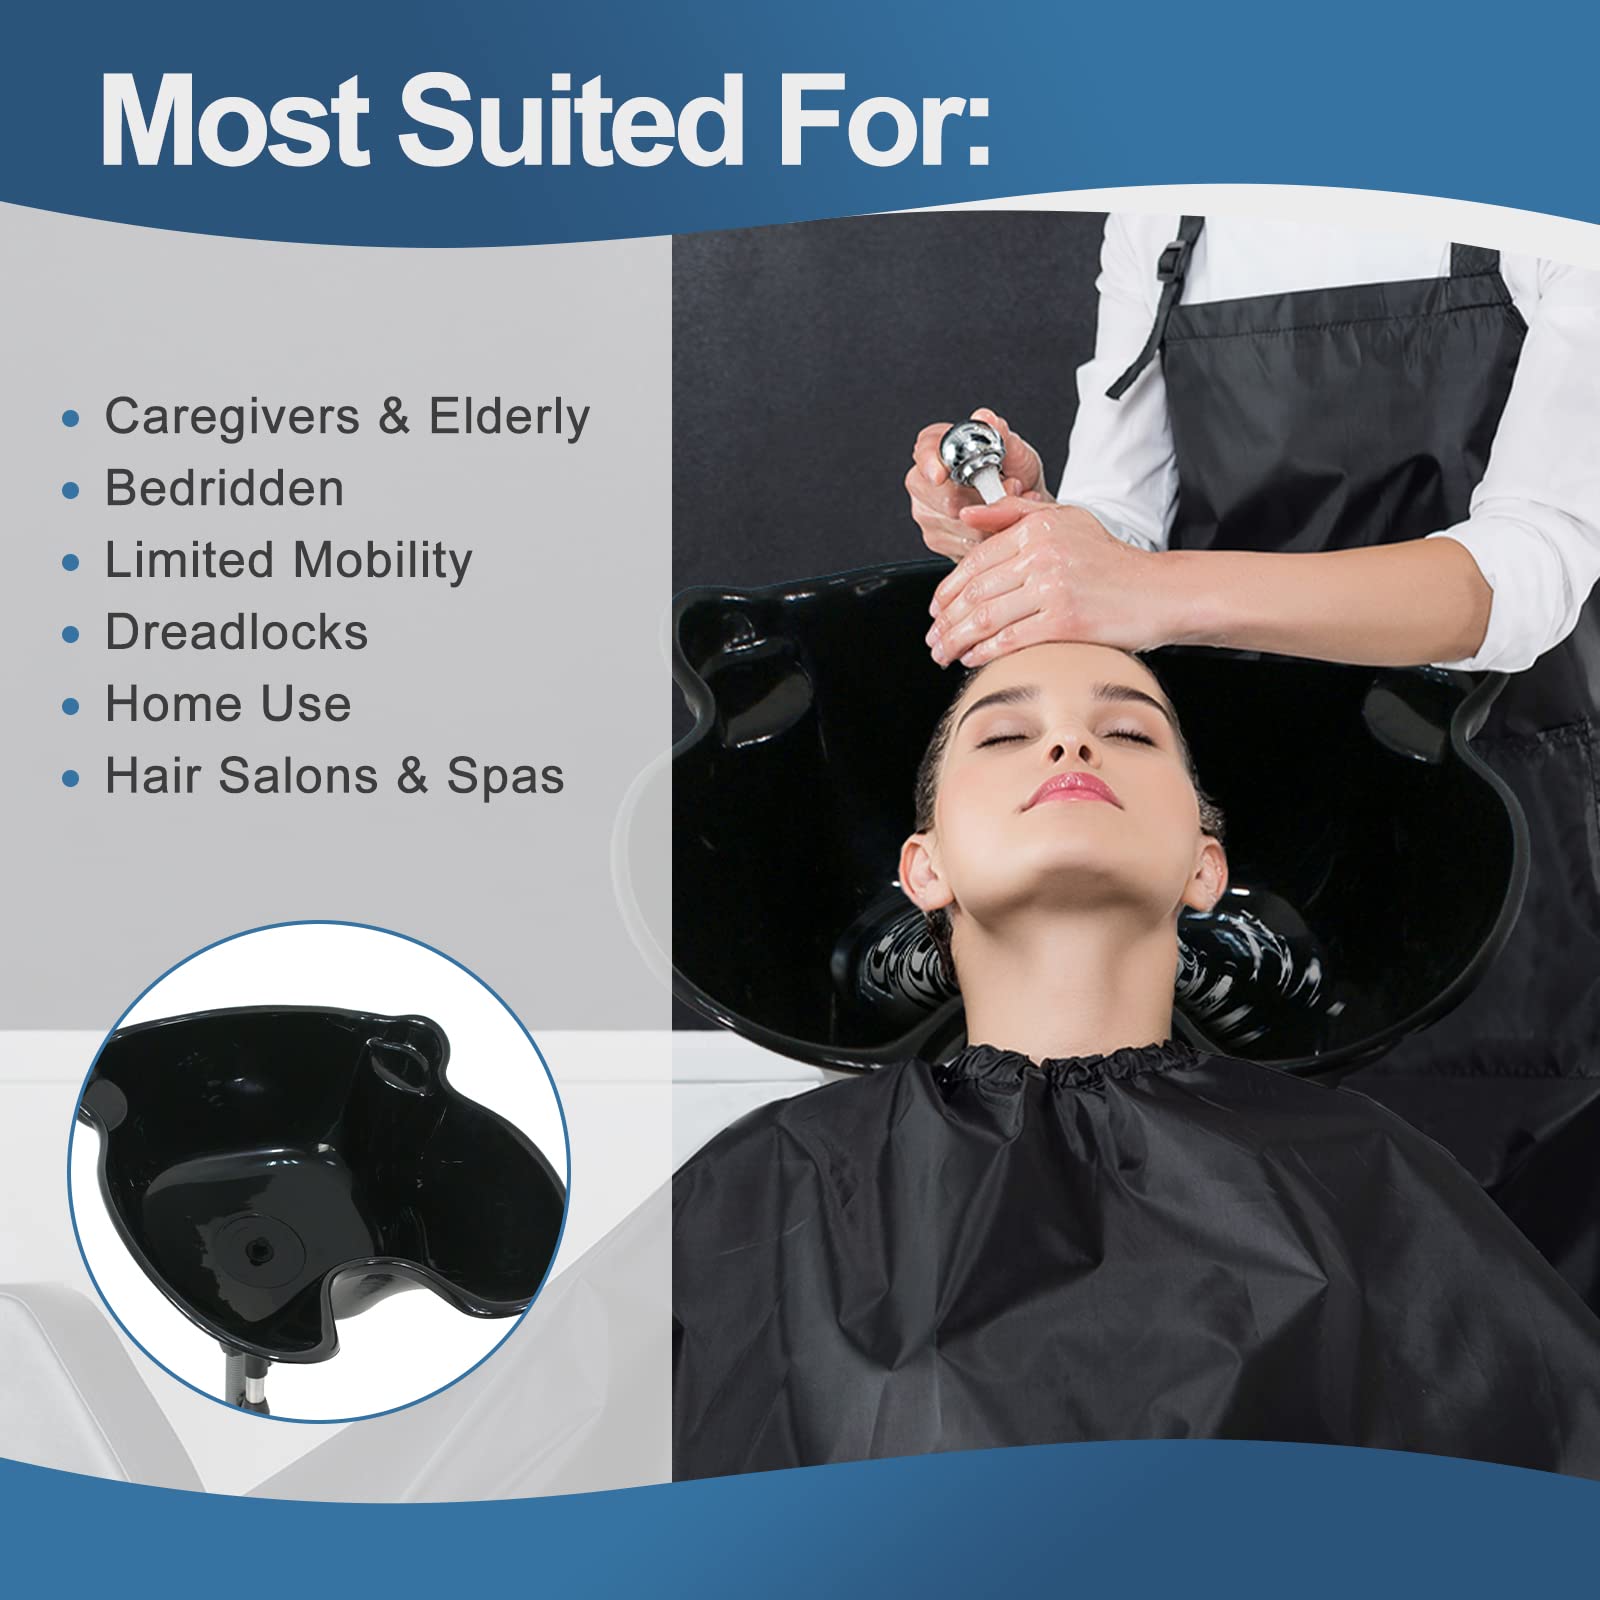 Height Adjustable Portable Salon Deep Shampoo Basin Sink Hair Treatment Bowl with Drain Hose- Black